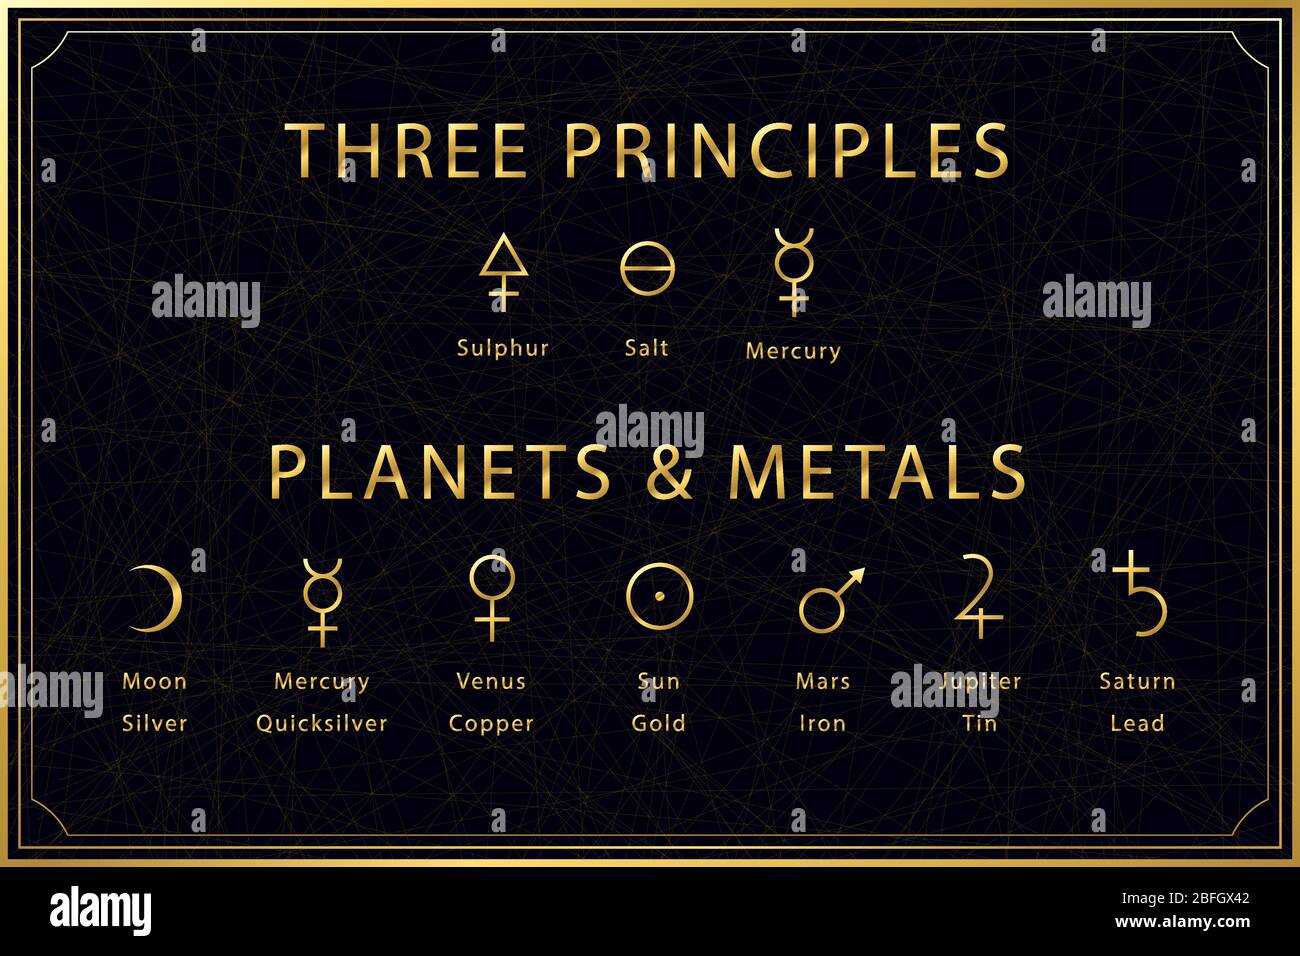 Simboli dorati alchemici su sfondo scuro. Tre principi dell'alchimia: Zolfo, sale, mercurio. Designazione di pianeti e metalli. Geometria sacra. Illustrazione di un vettore. Illustrazione Vettoriale